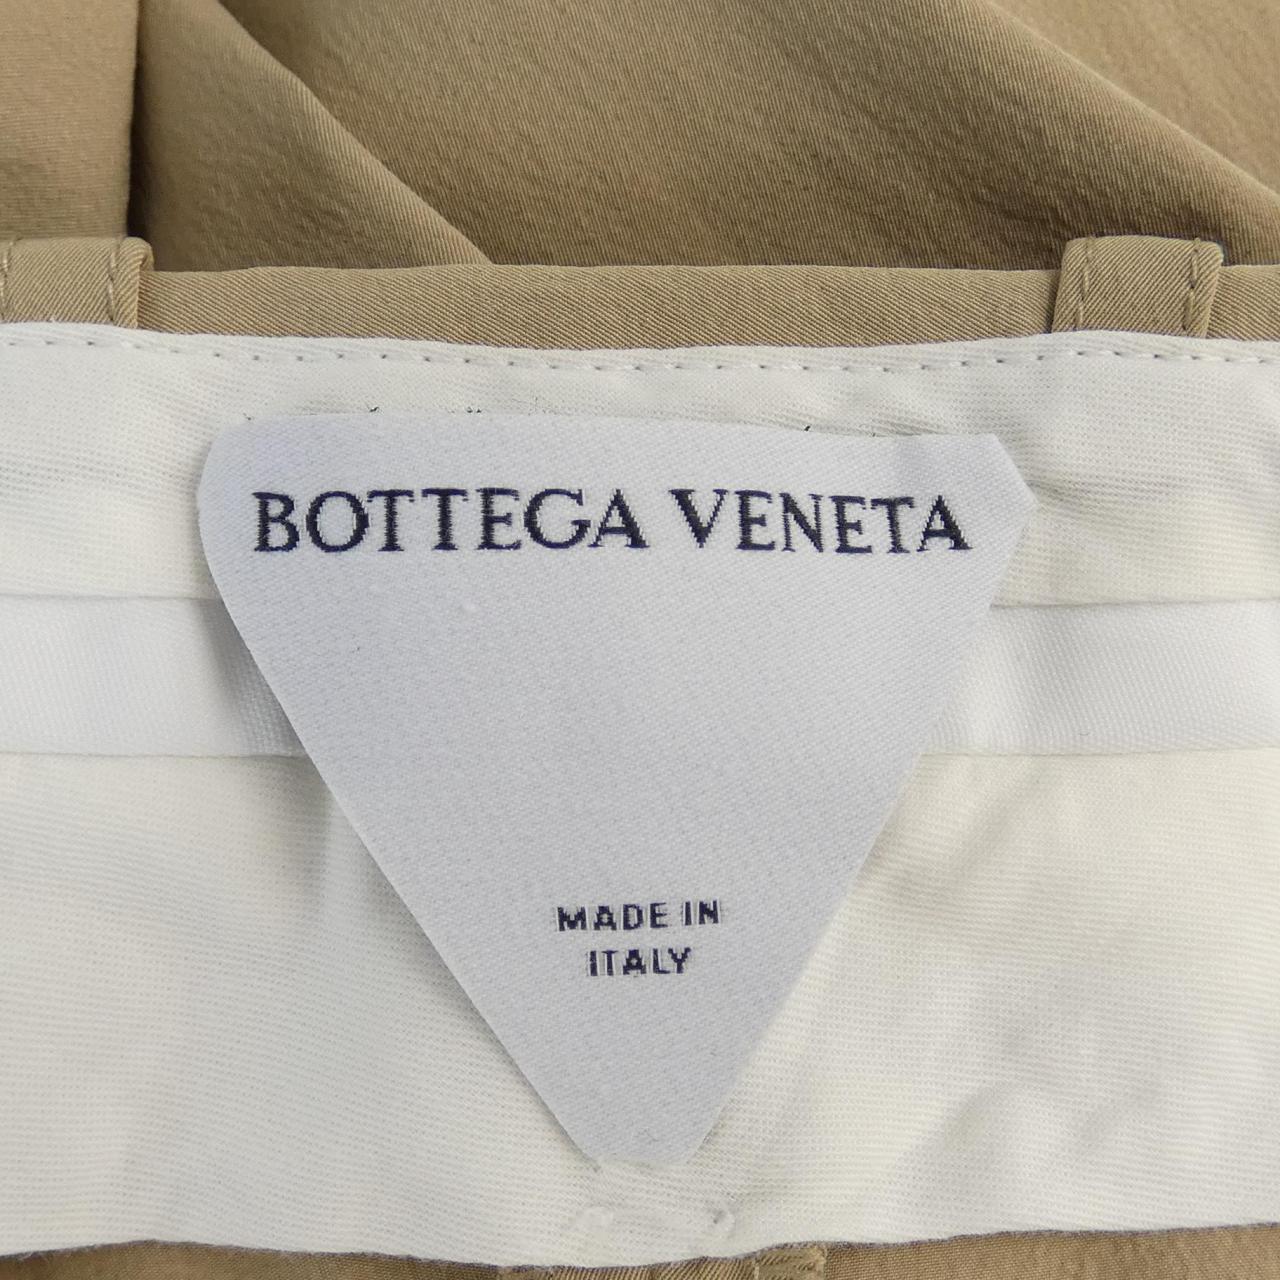 BOTTEGA VENETA Veneta 褲子